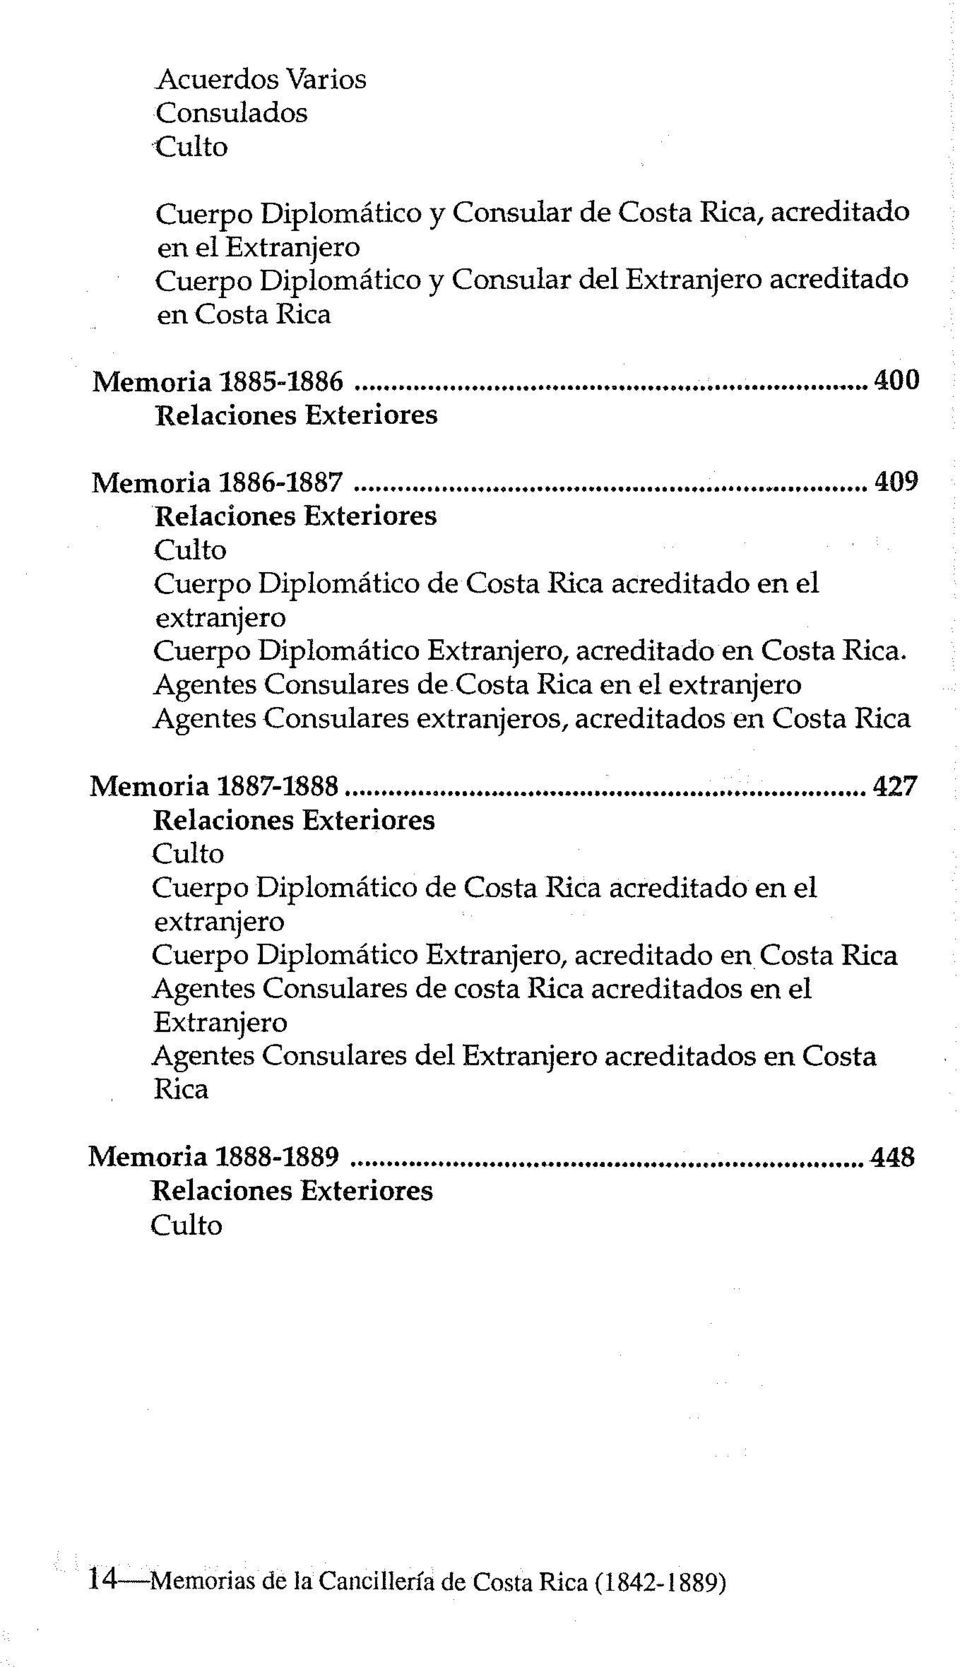 Agentes Consulares de en el extranjero Agentes Consulares extranjeros, acreditados en Memoria 1887-1888.